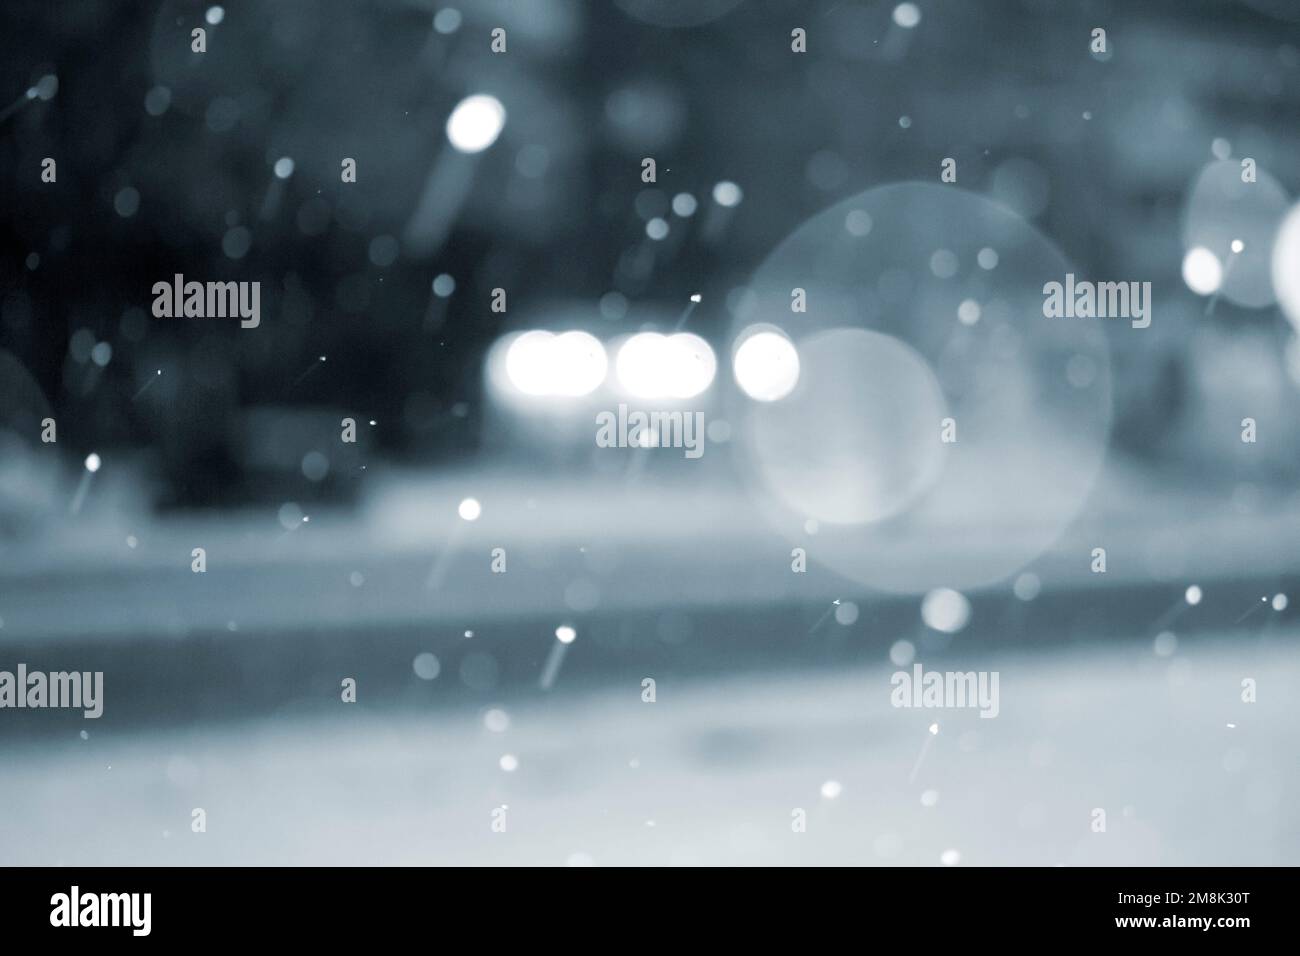 Arrière-plan flou. Voitures roulant sur la route en ville pendant la neige la nuit d'hiver. Taches de bokeh floues. Éclairage de rue, lanternes, lumière de phares lumineux. Décor hivernal. Couleur bleue Banque D'Images